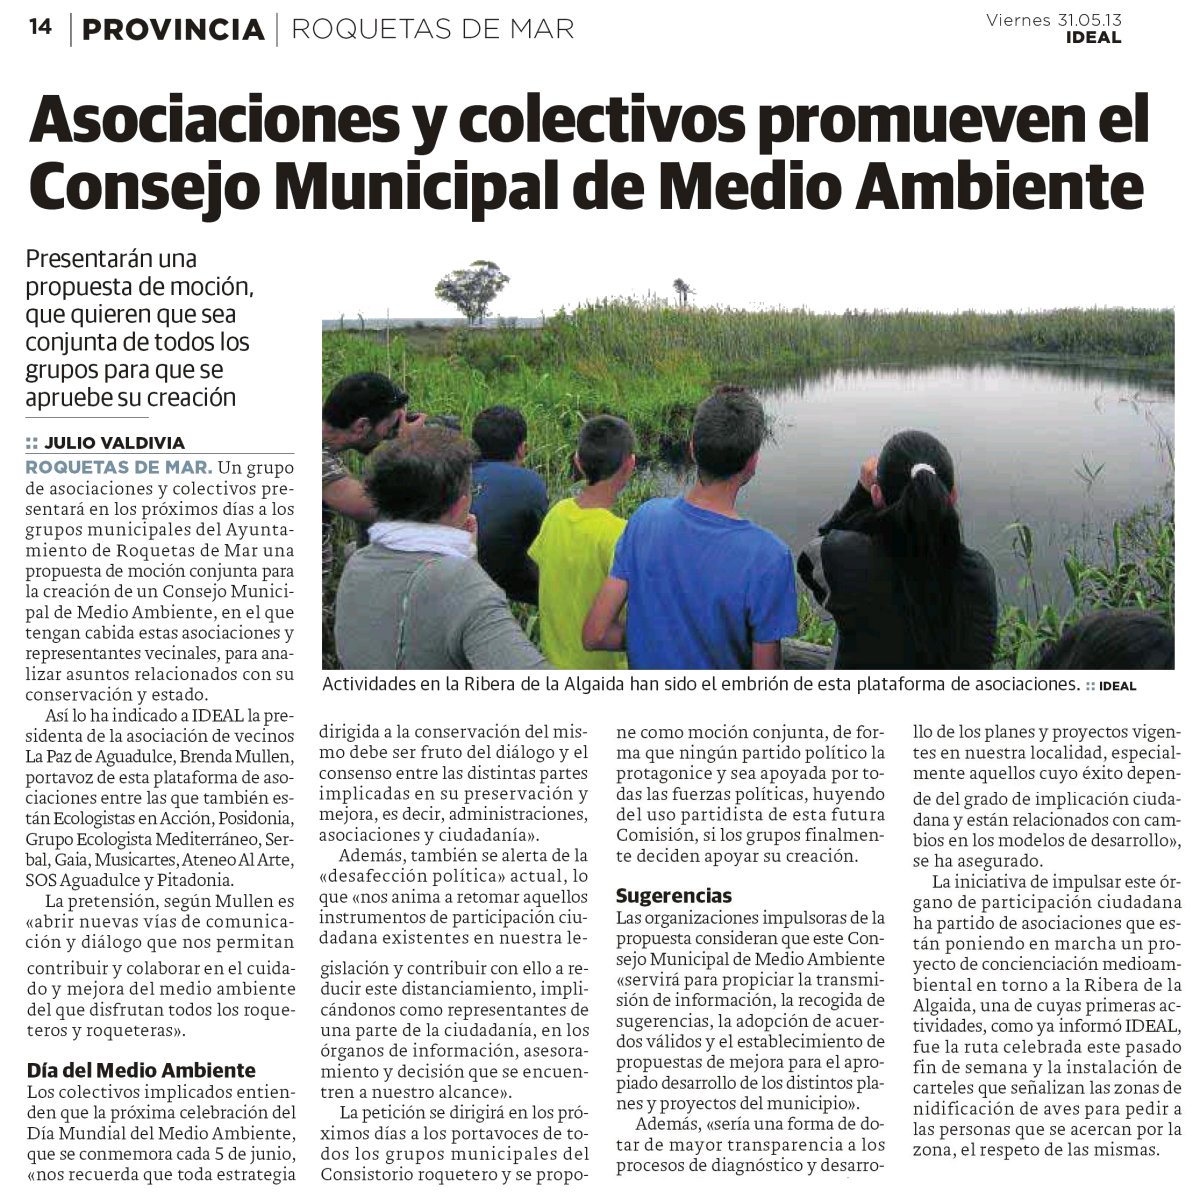 Posidonia junto con otros colectivos solicitan la creación del consejo municipal de medio ambiente en Roquetas